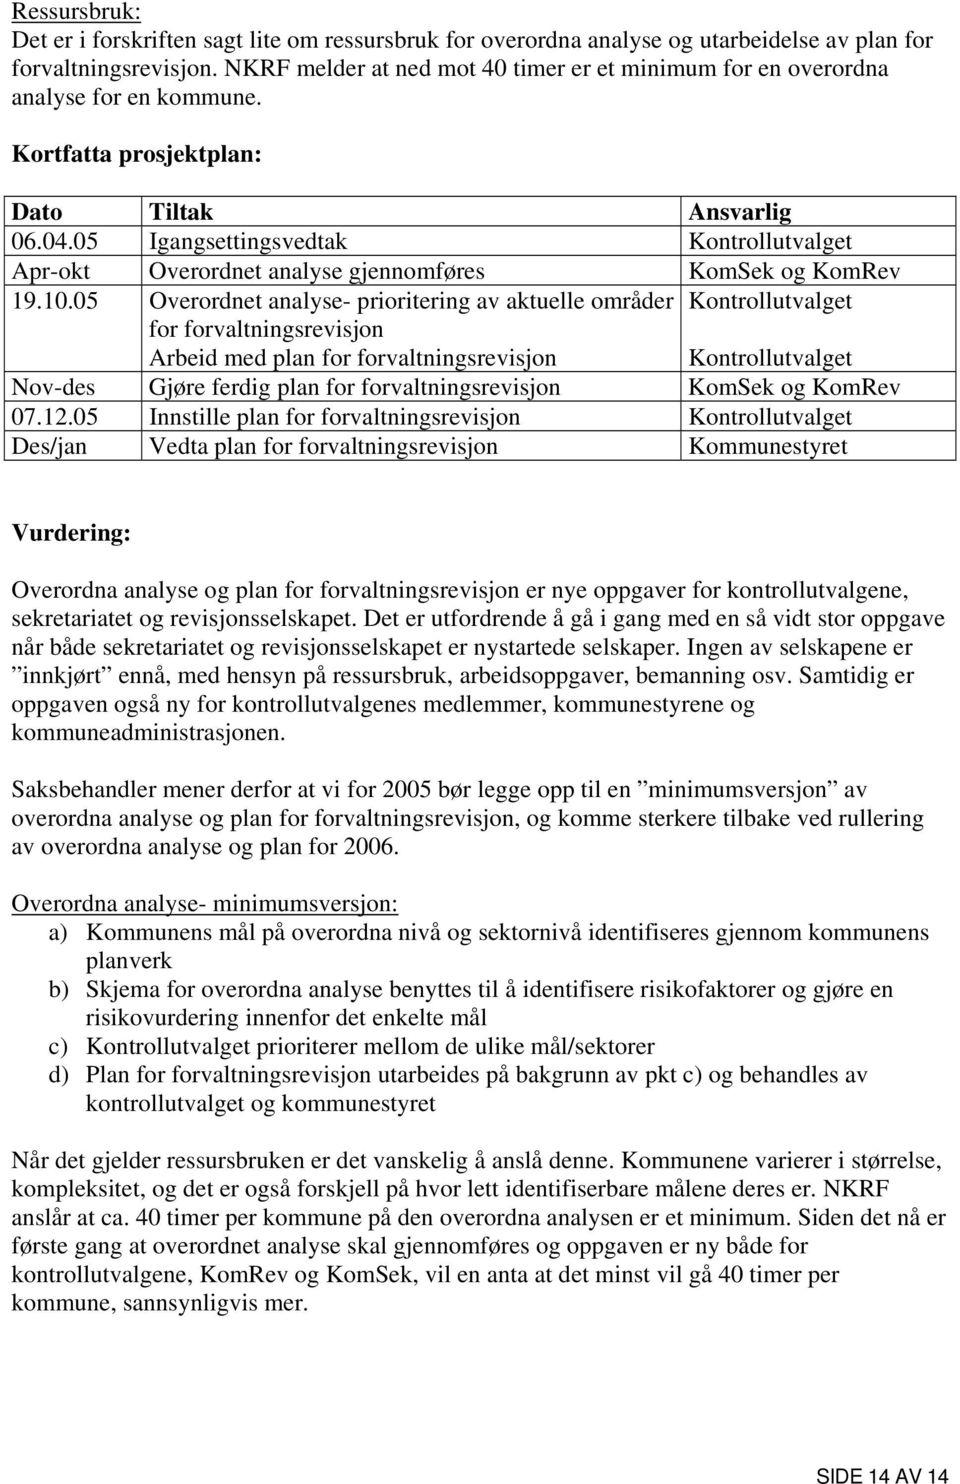 05 Igangsettingsvedtak Kontrollutvalget Apr-okt Overordnet analyse gjennomføres KomSek og KomRev 19.10.